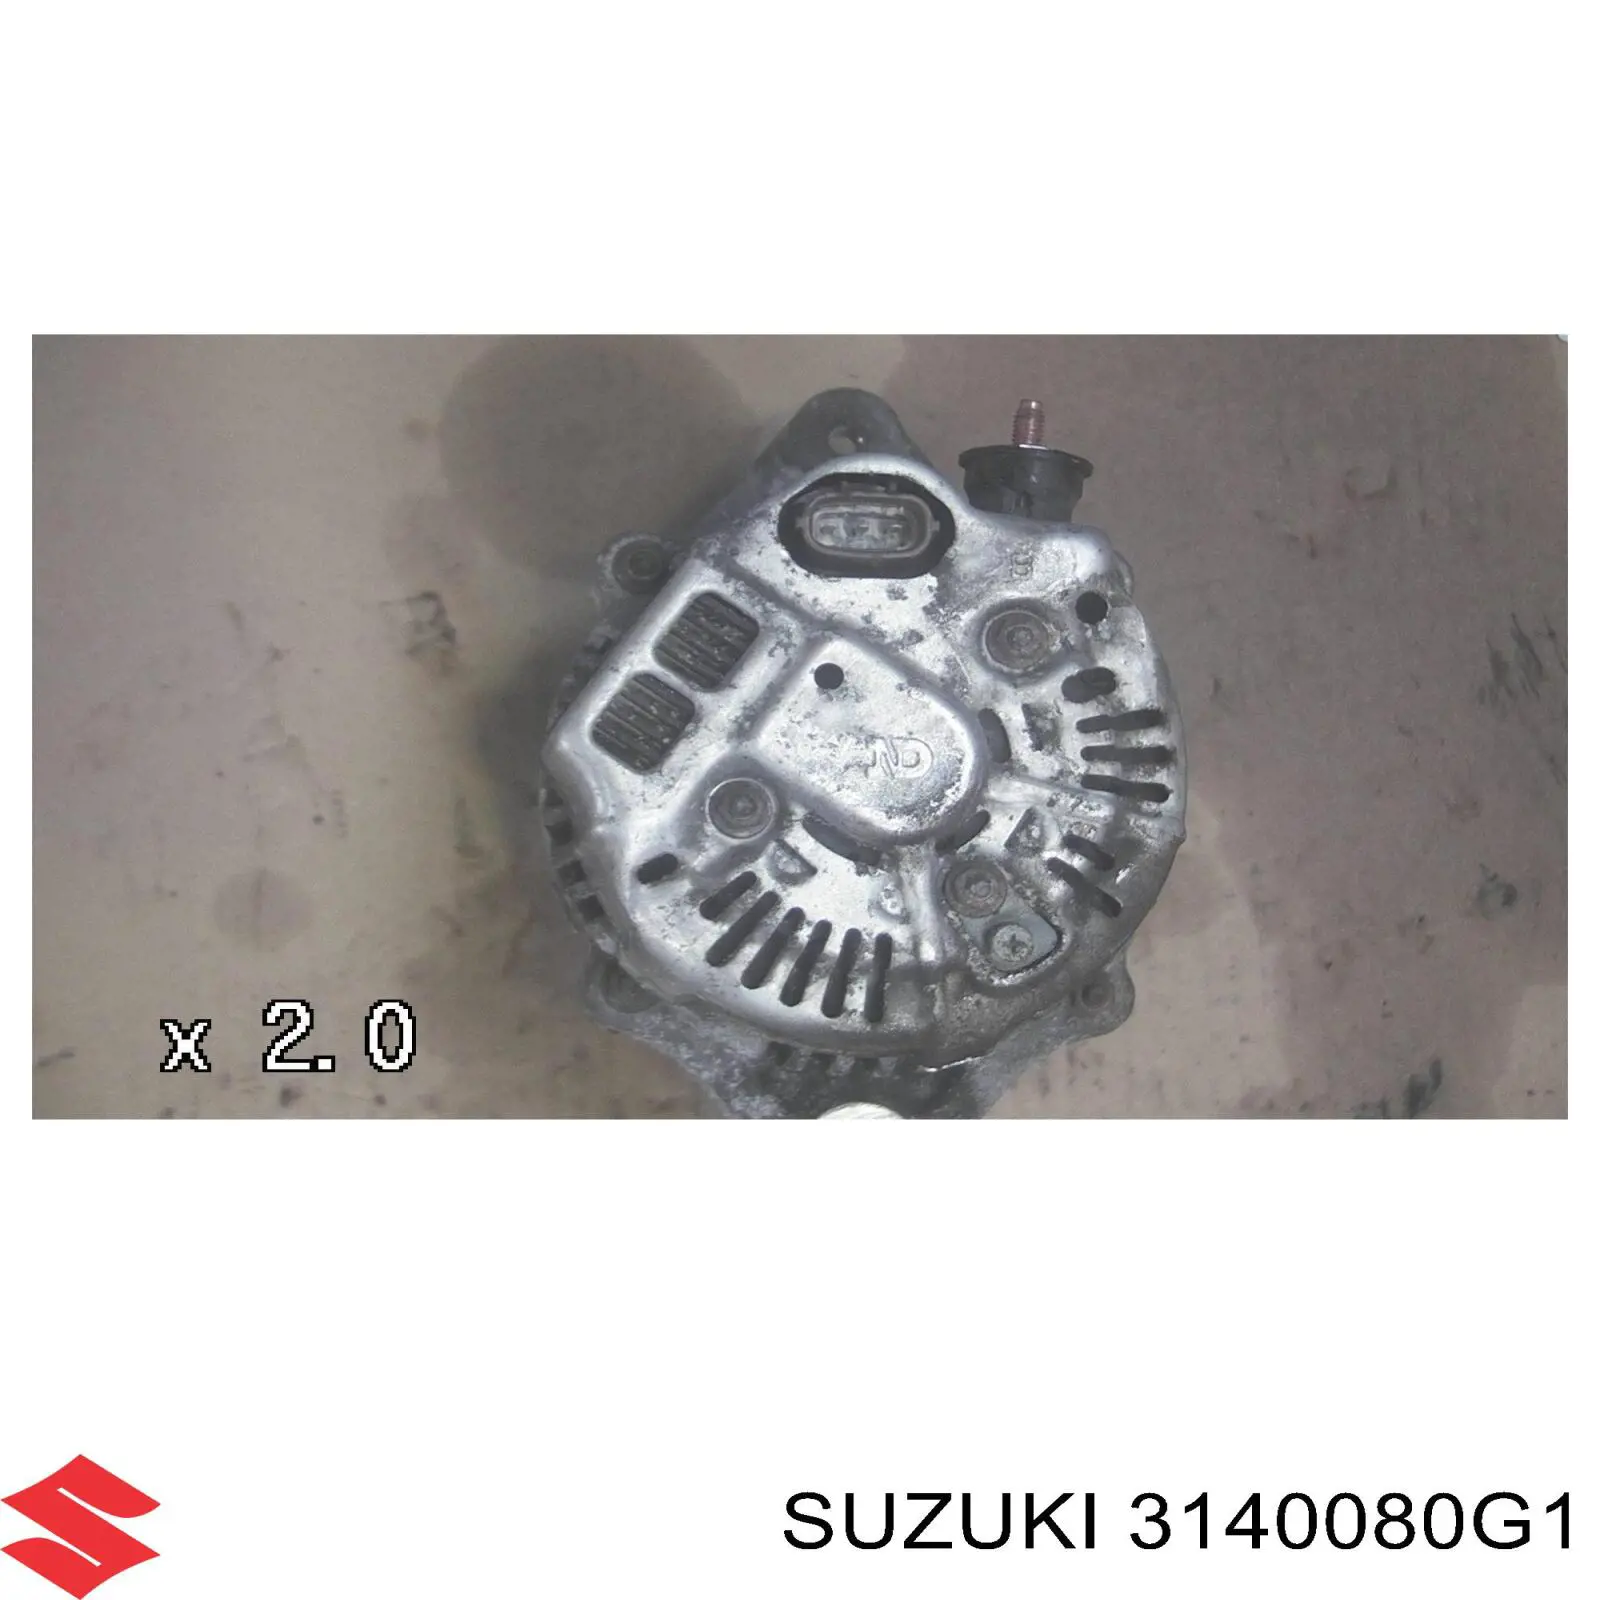 3140080G1 Suzuki alternador